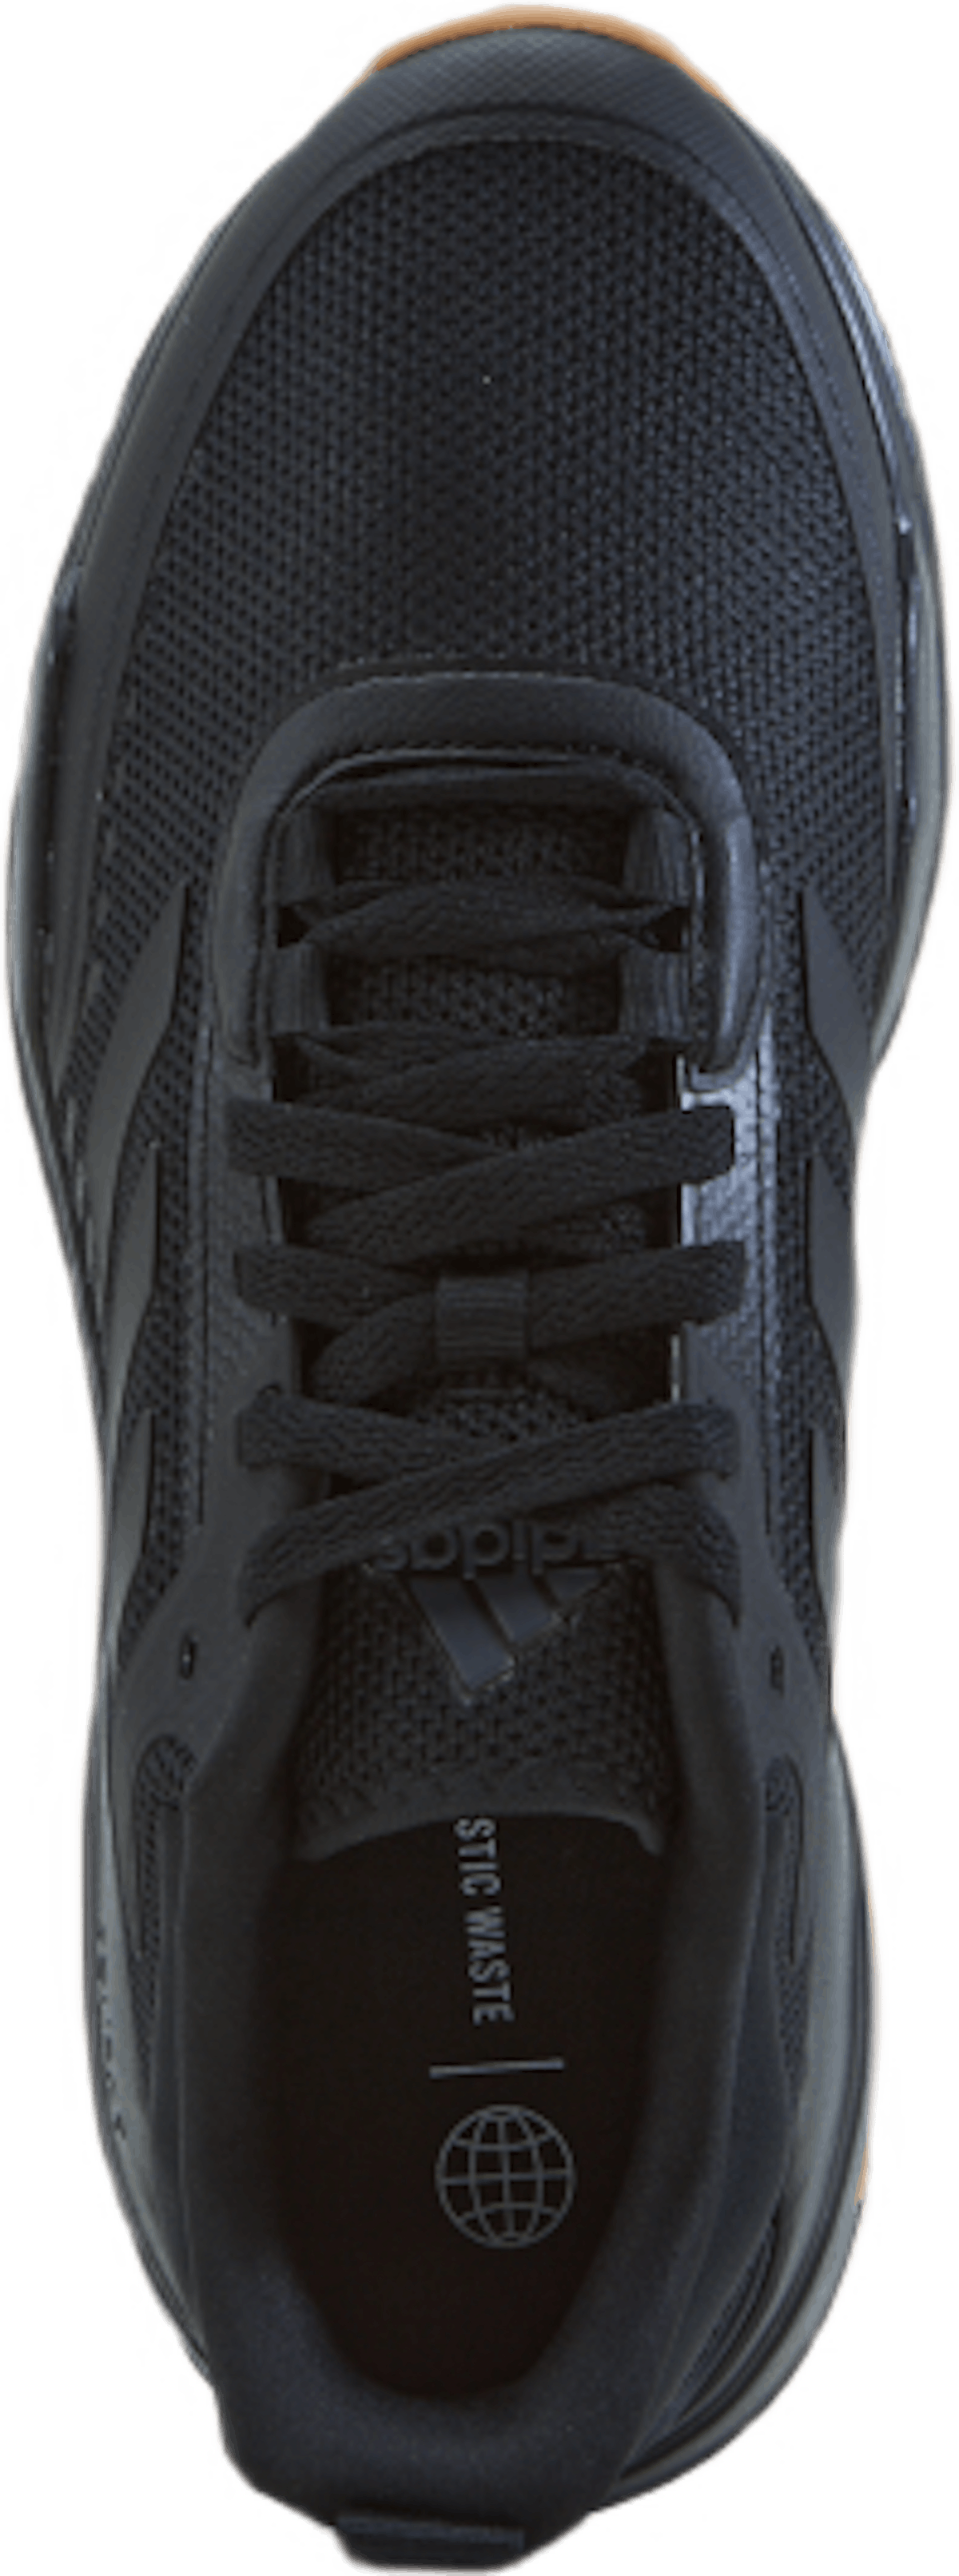 Trainer V Shoes Core Black / Core Black / Gum